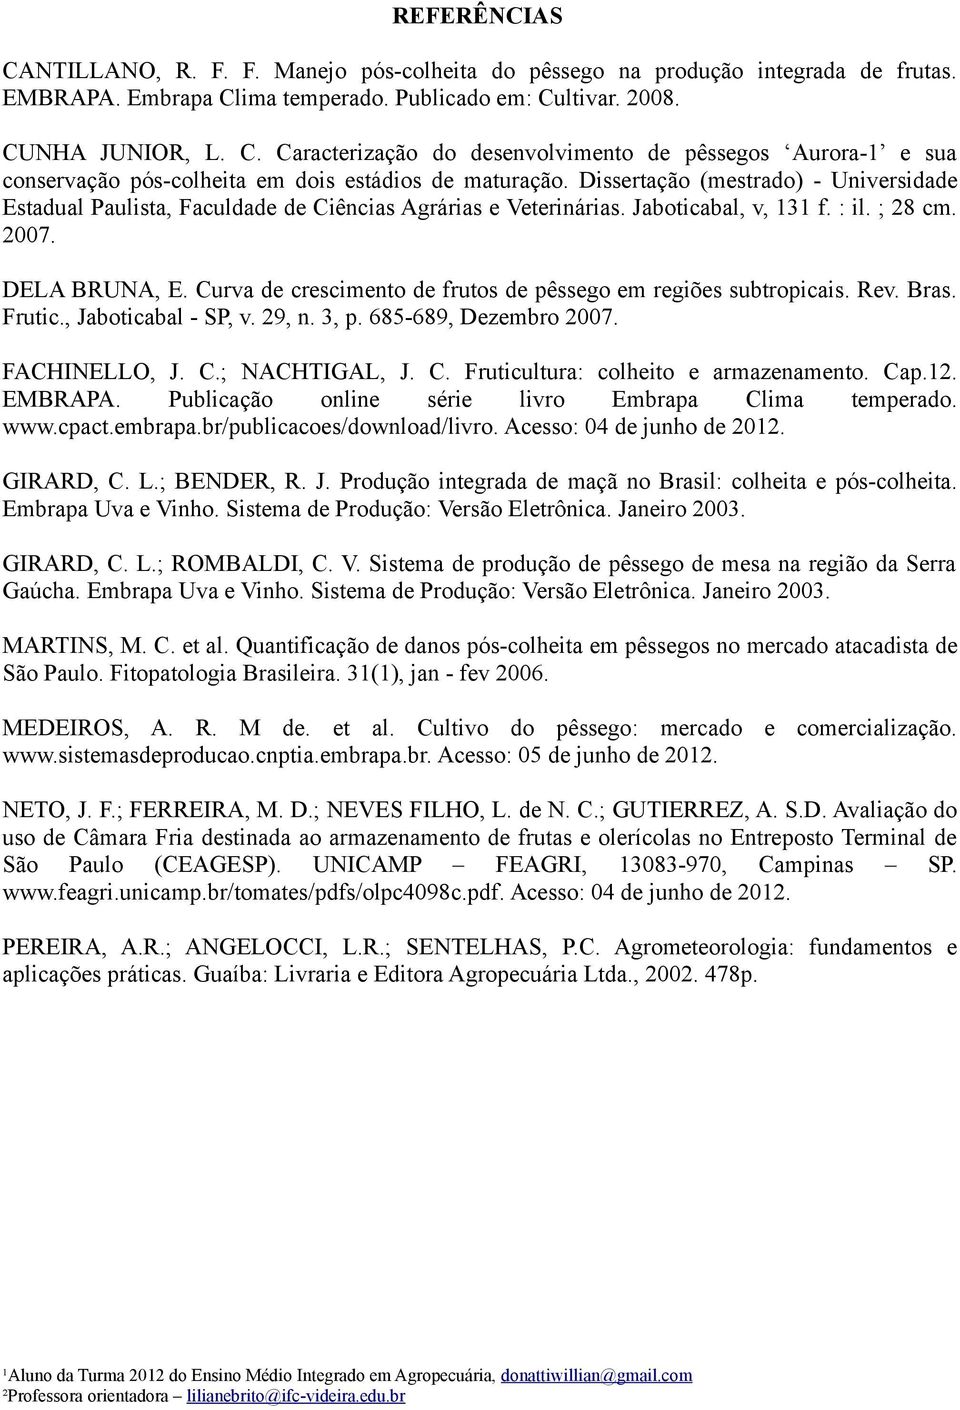 Curva de crescimento de frutos de pêssego em regiões subtropicais. Rev. Bras. Frutic., Jaboticabal - SP, v. 29, n. 3, p. 685-689, Dezembro 2007. FACHINELLO, J. C.